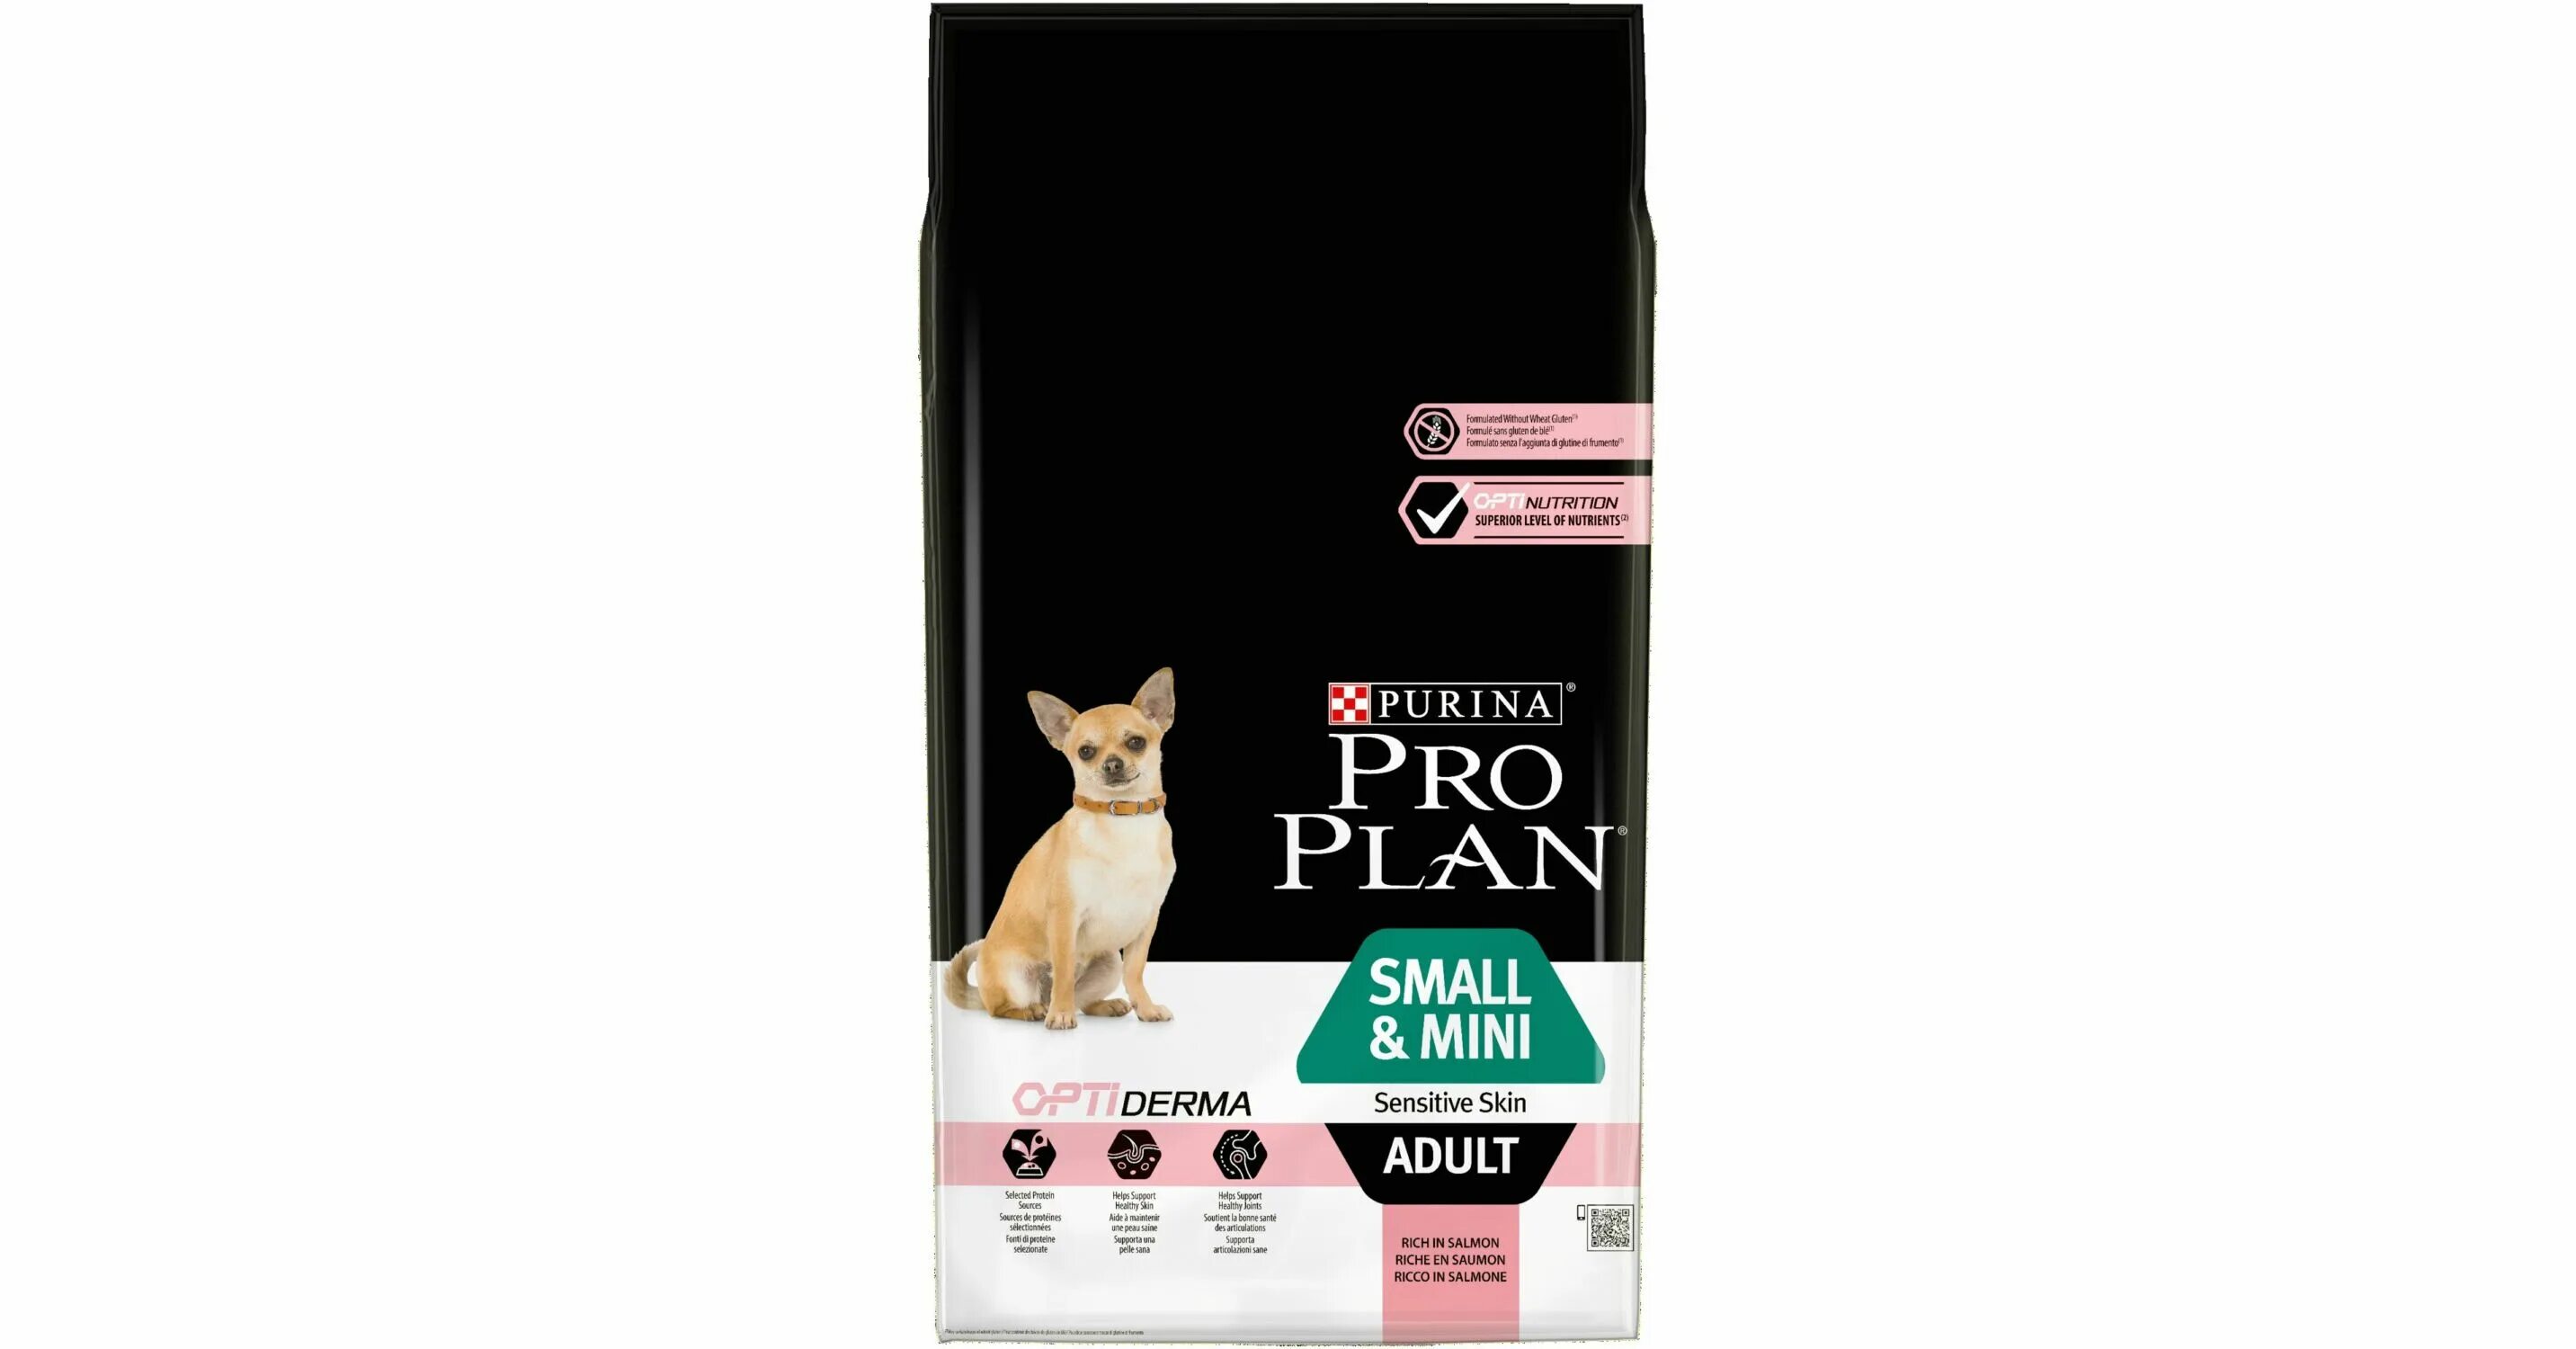 Проплан ОПТИДЕРМА для собак. Корм для собак Purina Pro Plan OPTIDERMA 20кг. Про палн для мелких пород 7 кг. Сухой корм для собак Pro Plan 7 кг. Проплан для собак мелких ягненком